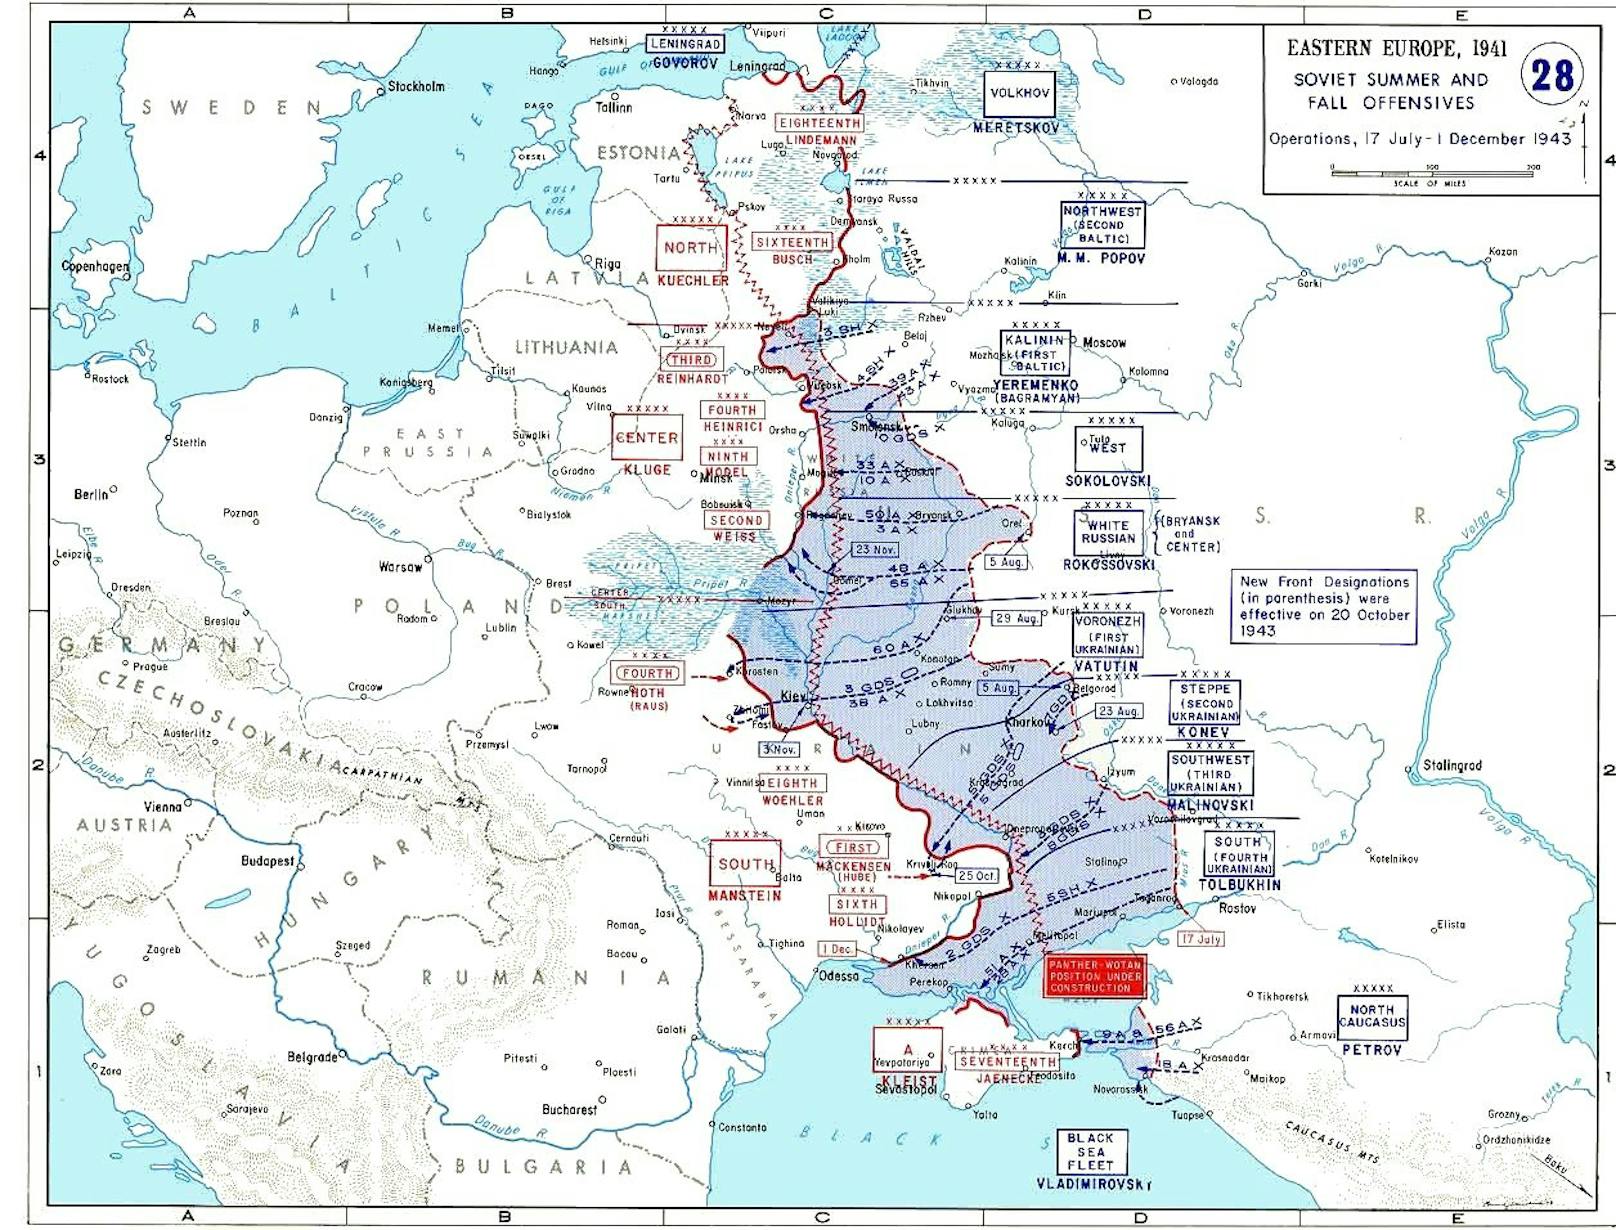 Die Ostfront vom 17. Juli bis 1. Dezember 1943 während der Schlacht am Dnipro.